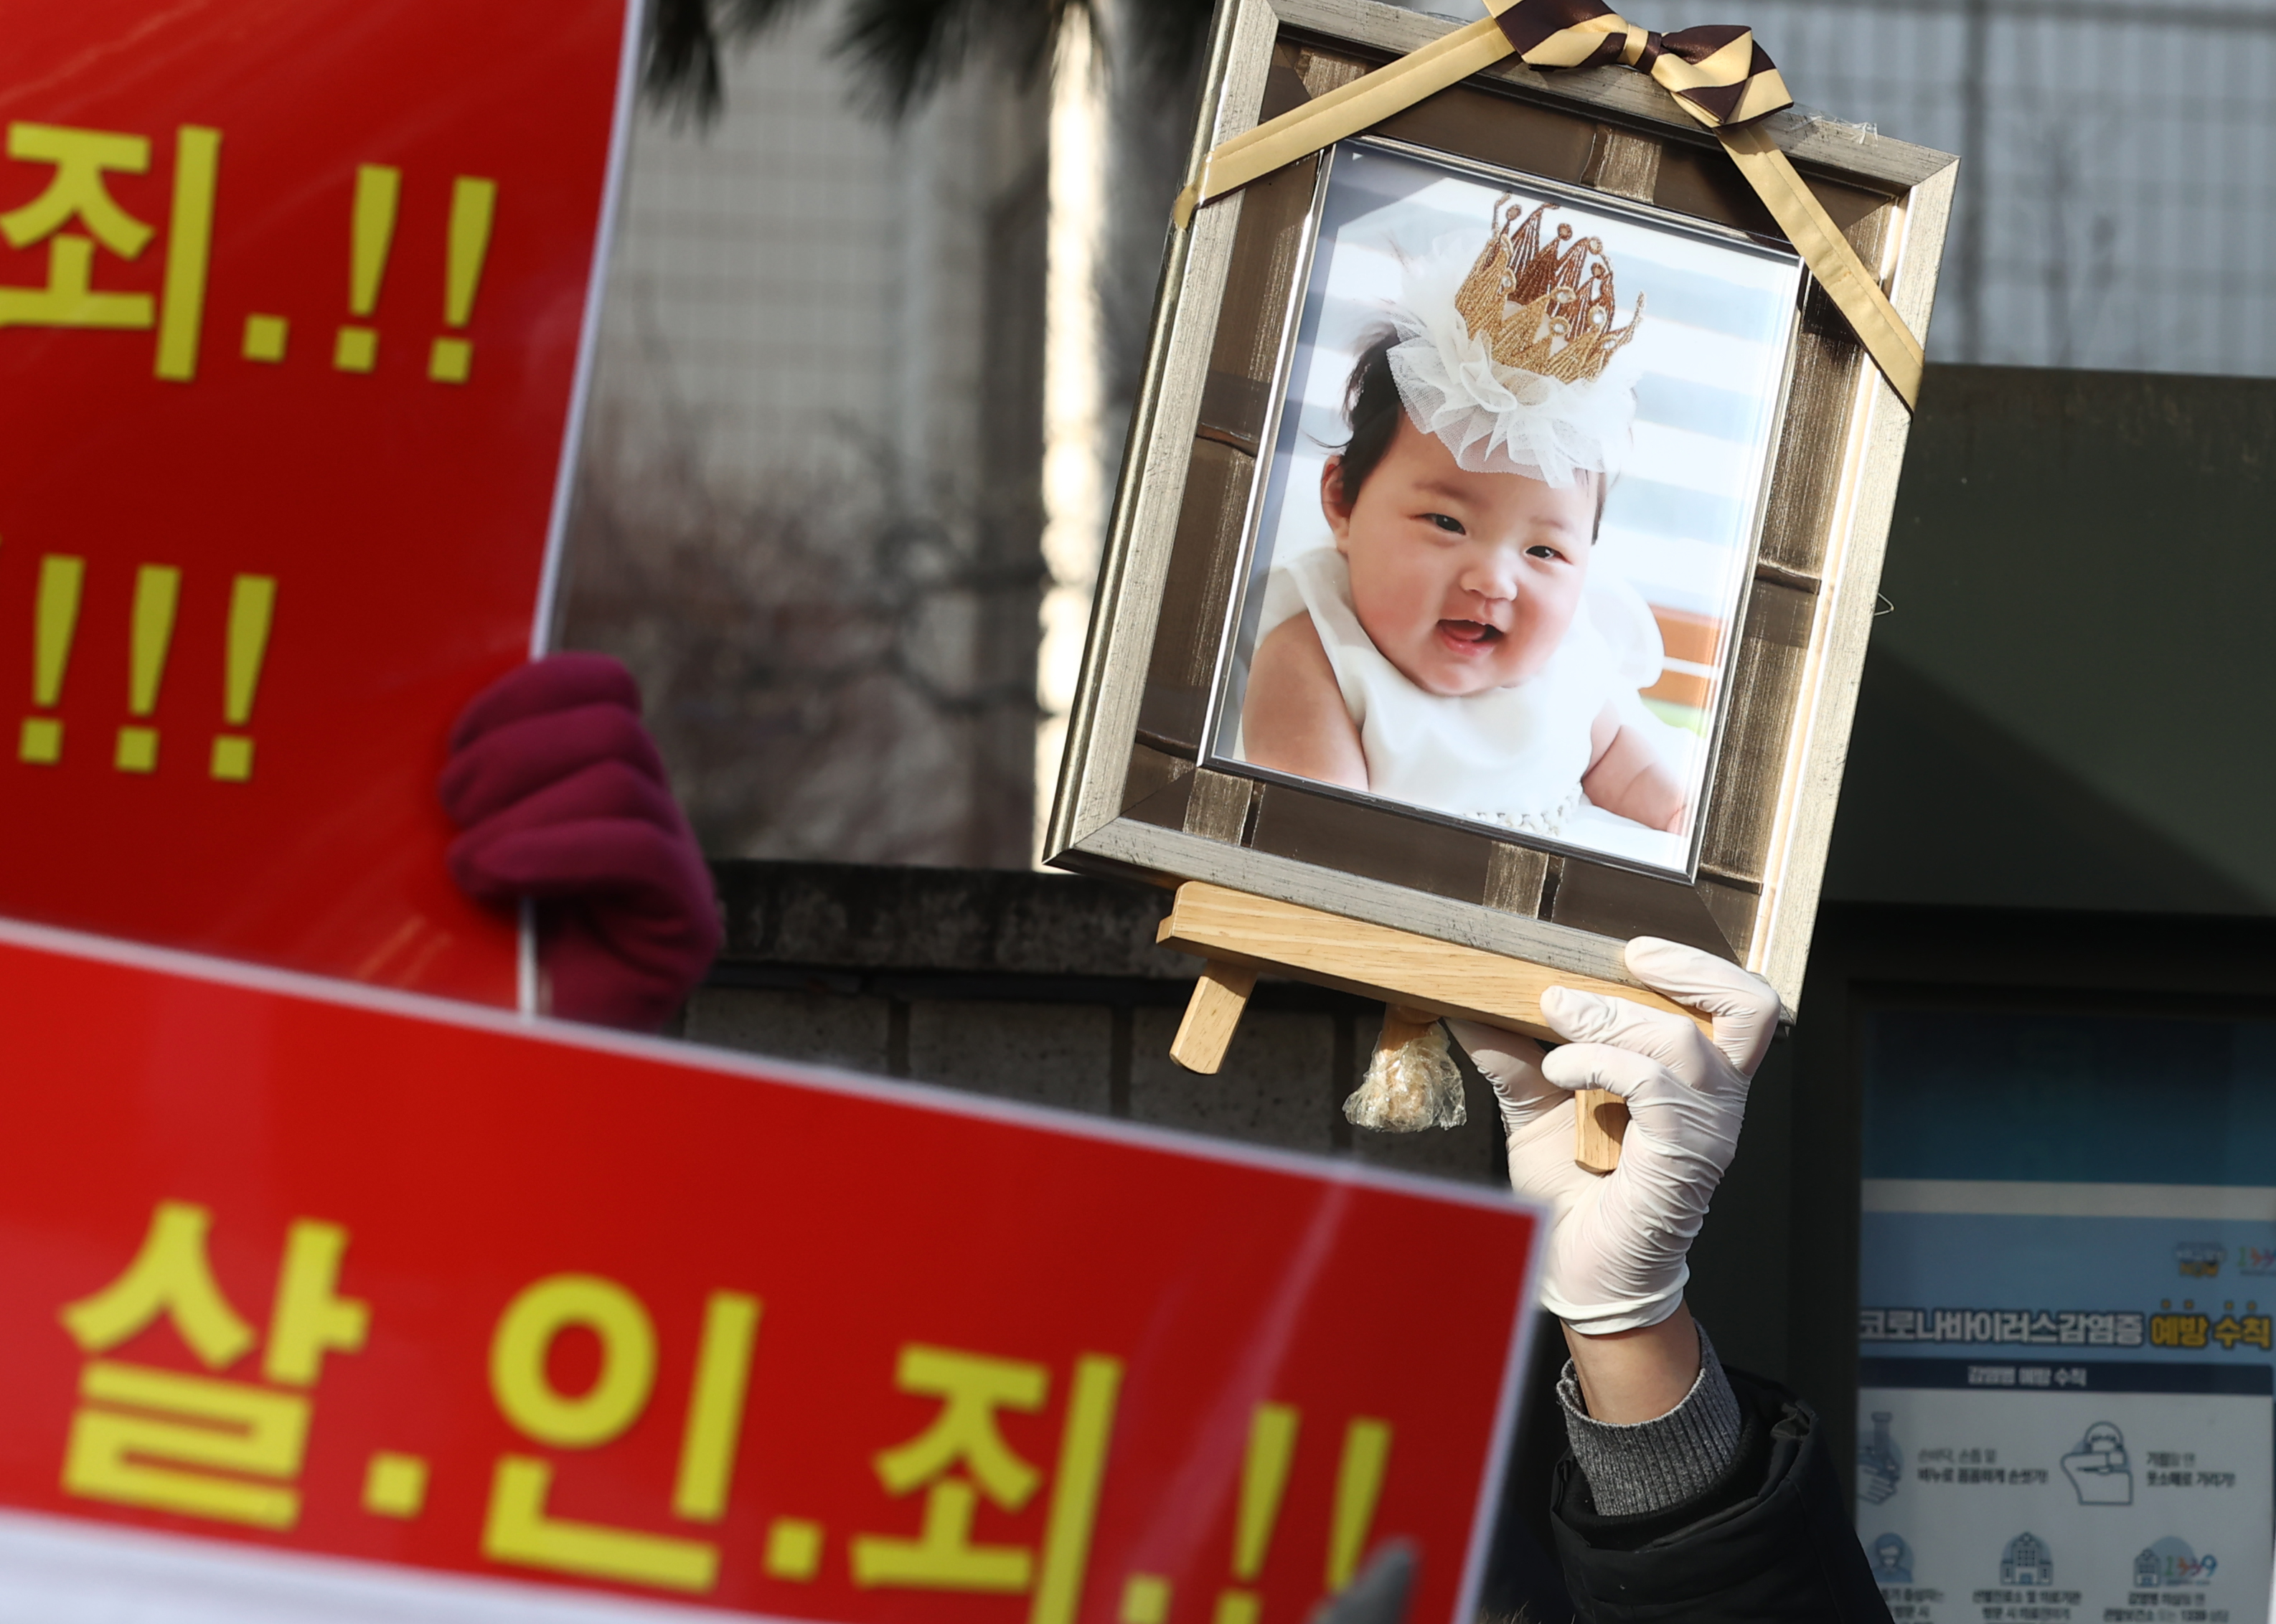  17일 서울남부지법 앞에서 시민들이 정인이 사진과 양부모 엄벌을 촉구하는 손팻말을 들고 있는 모습